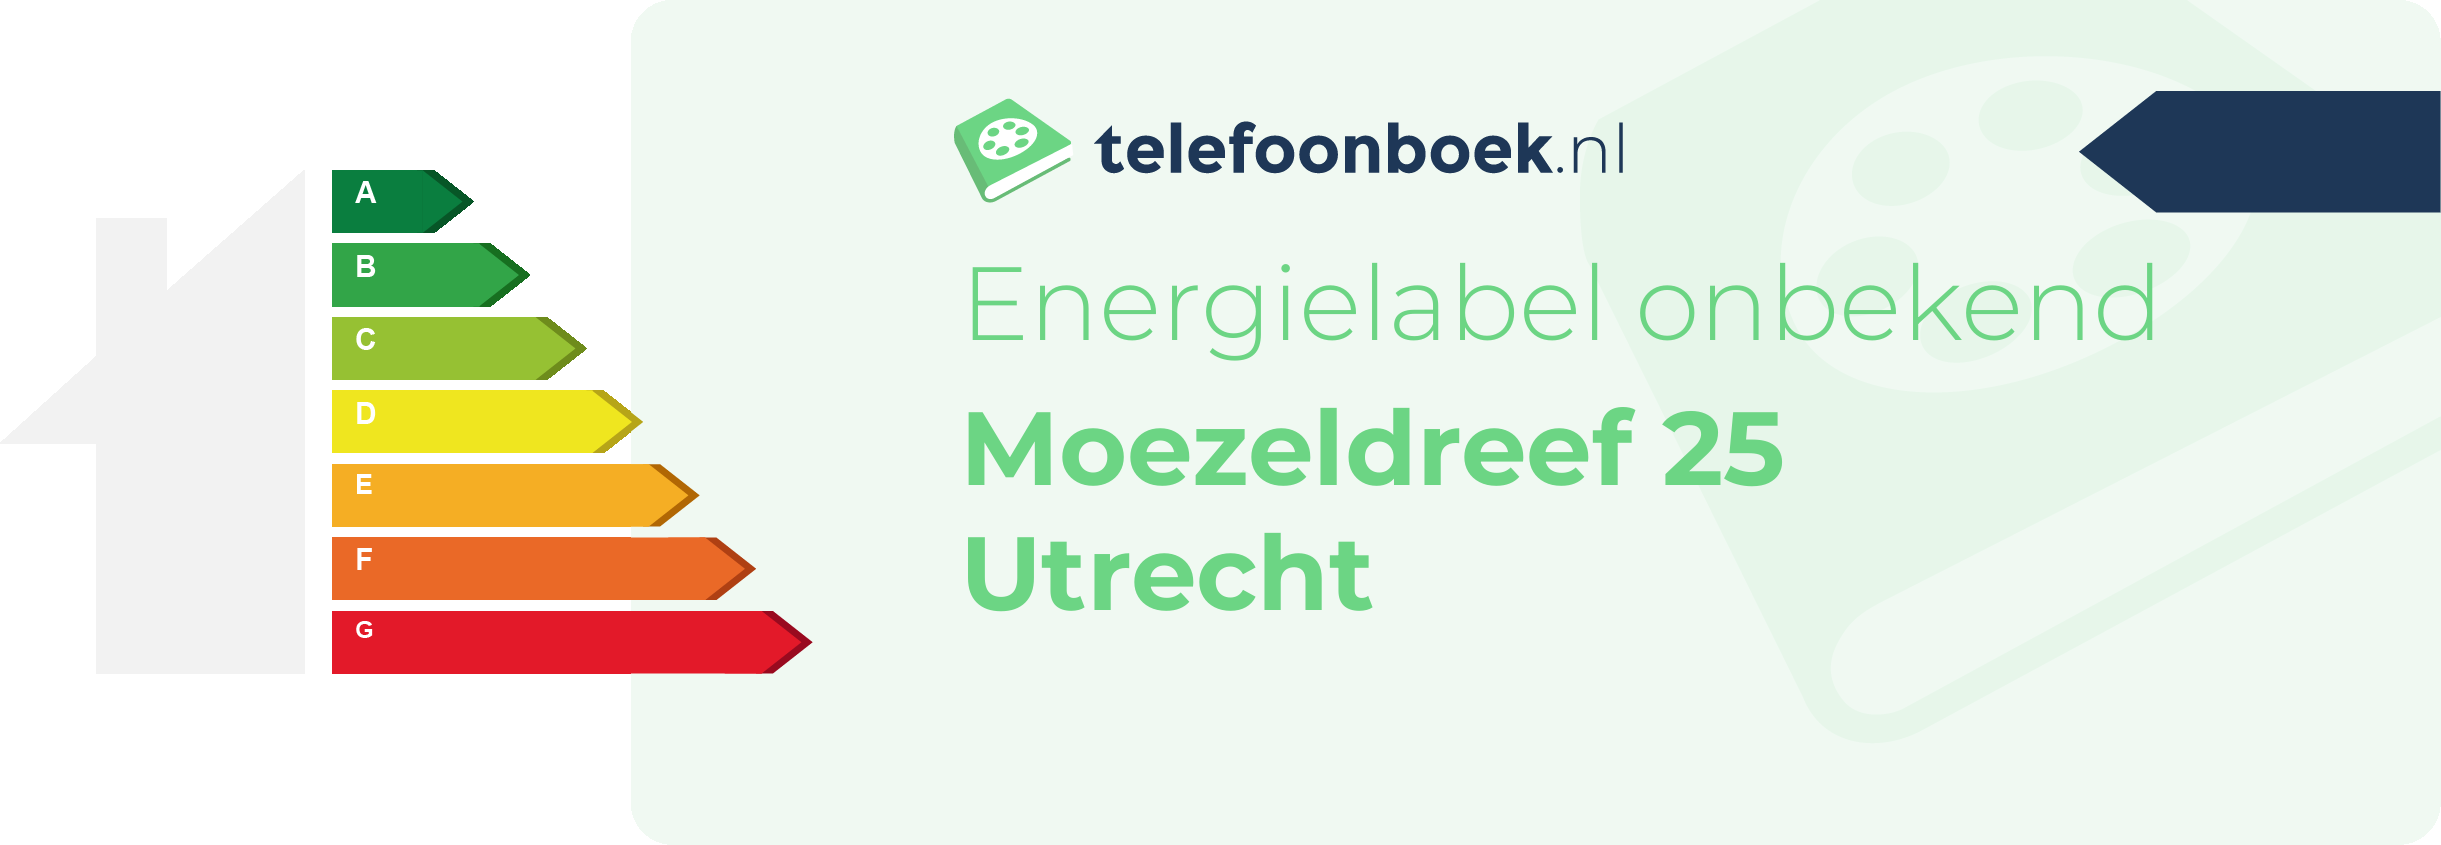 Energielabel Moezeldreef 25 Utrecht